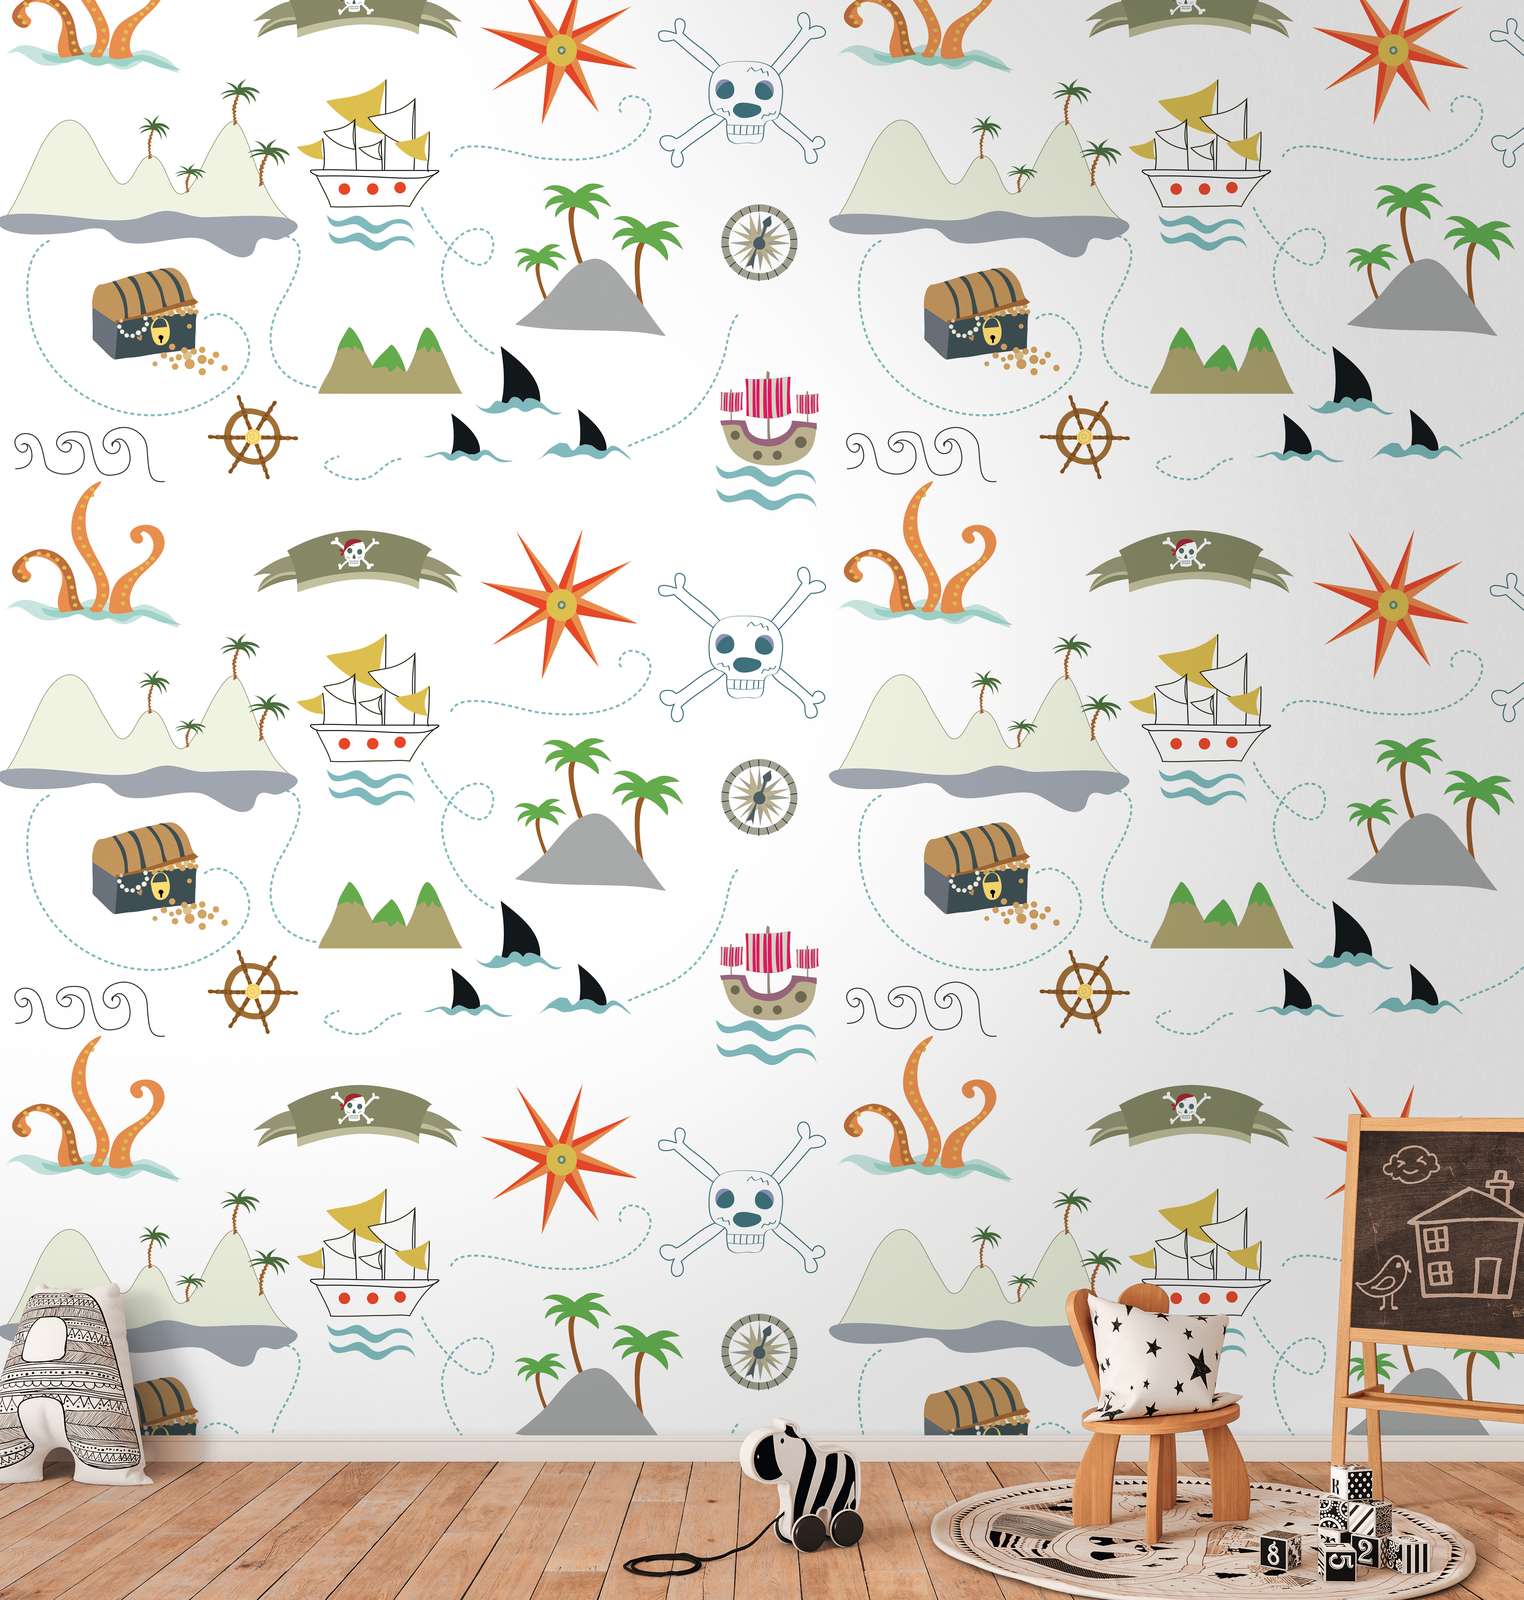             Children's non-woven wallpaper with pirate symbols - colourful, cream, grey
        